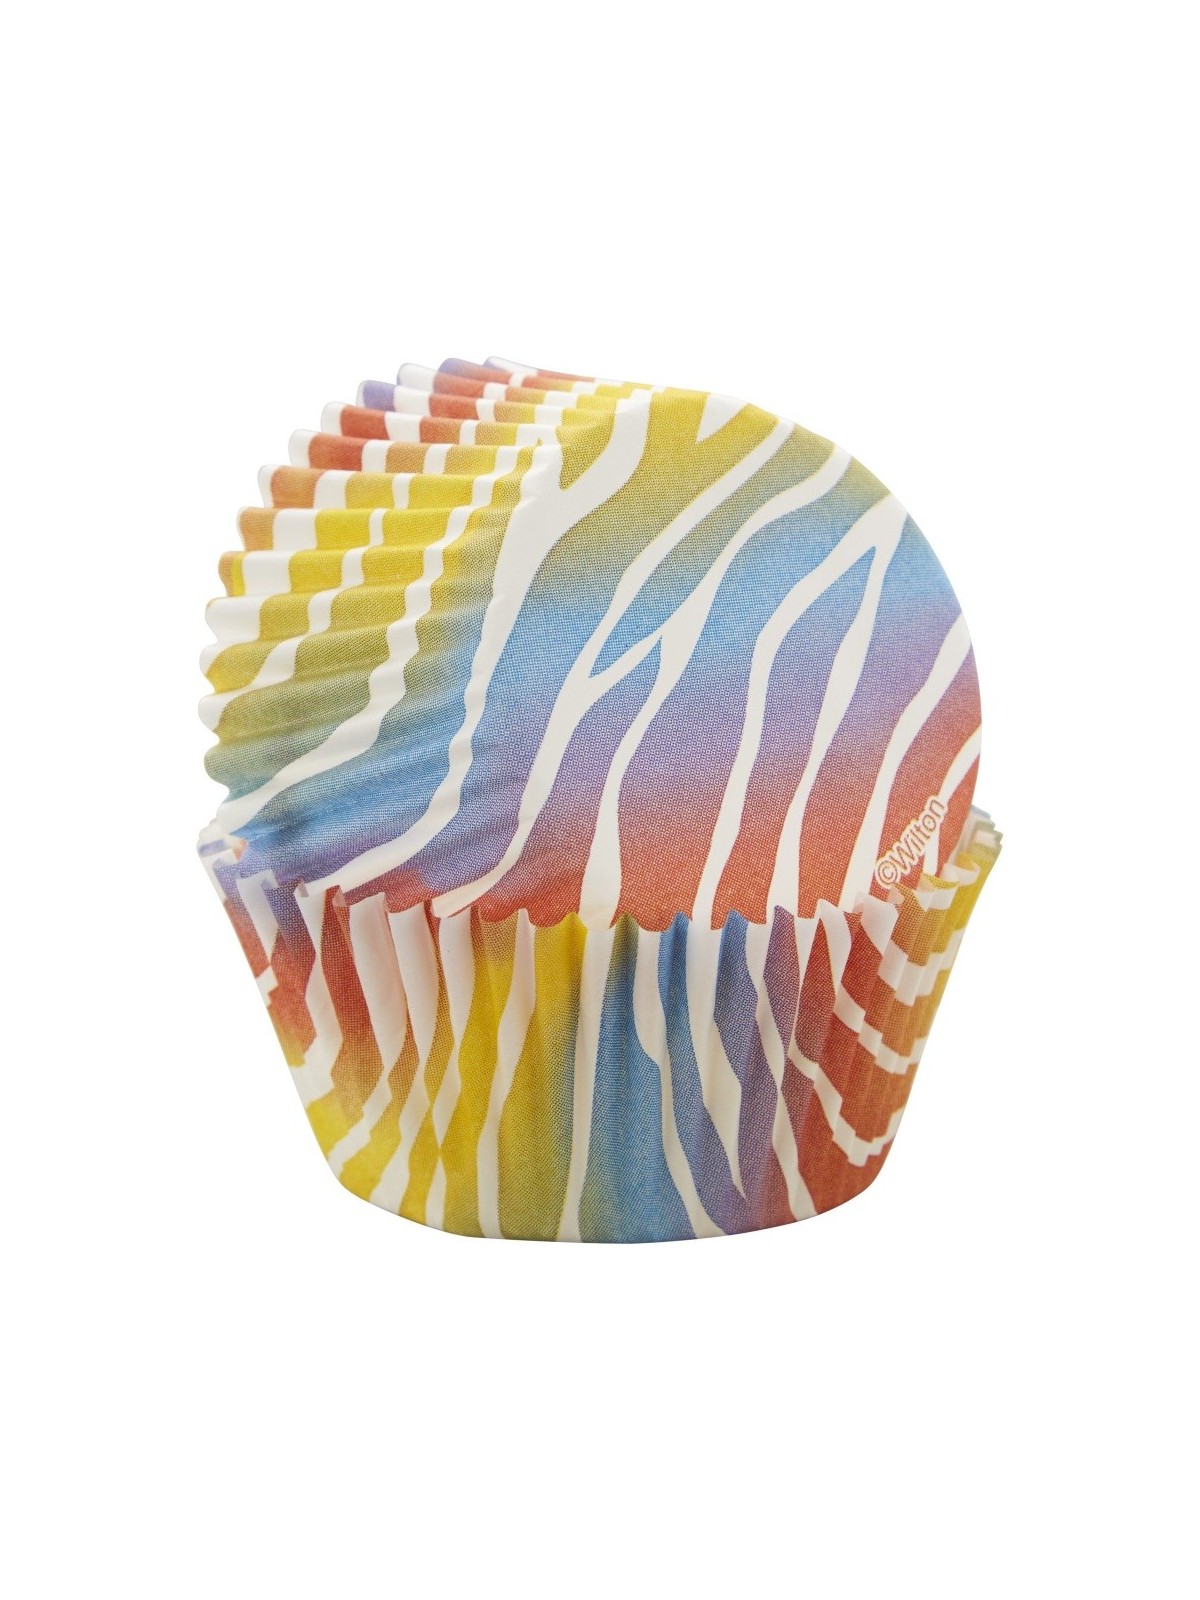 Wilton cukrářské košíčky - barevná zebra - 75ks